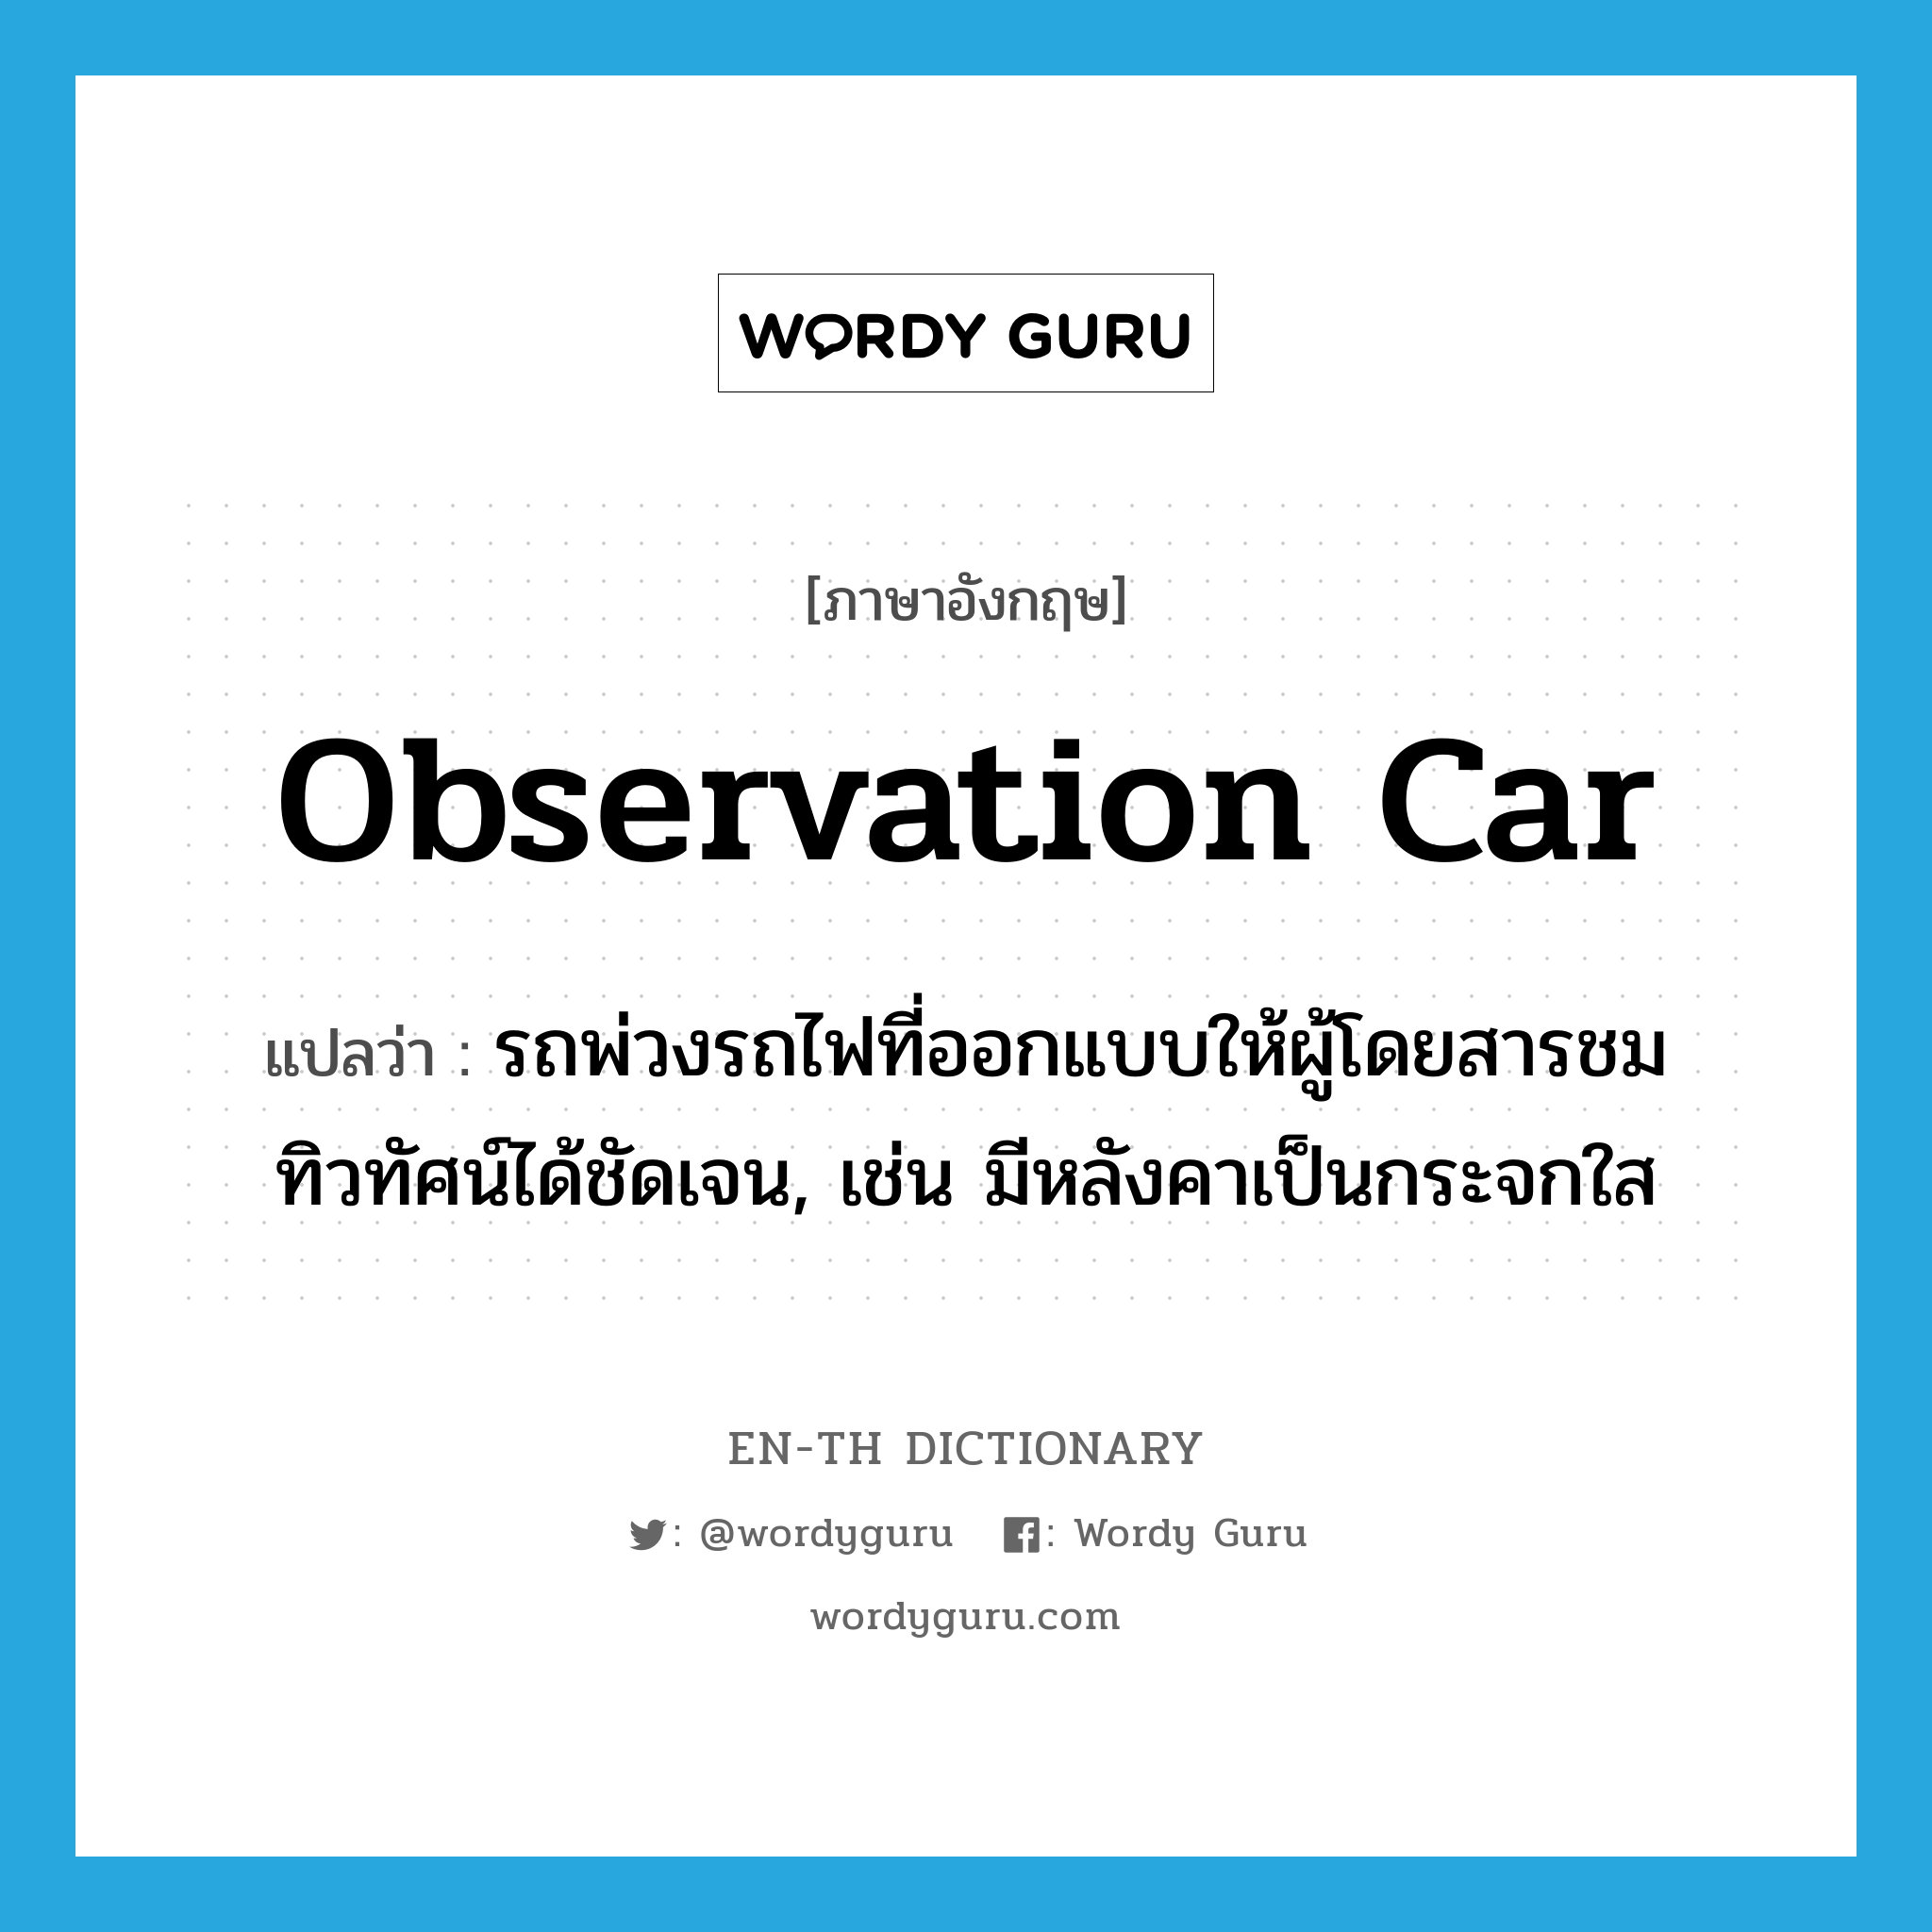 observation car แปลว่า?, คำศัพท์ภาษาอังกฤษ observation car แปลว่า รถพ่วงรถไฟที่ออกแบบให้ผู้โดยสารชมทิวทัศน์ได้ชัดเจน, เช่น มีหลังคาเป็นกระจกใส ประเภท N หมวด N